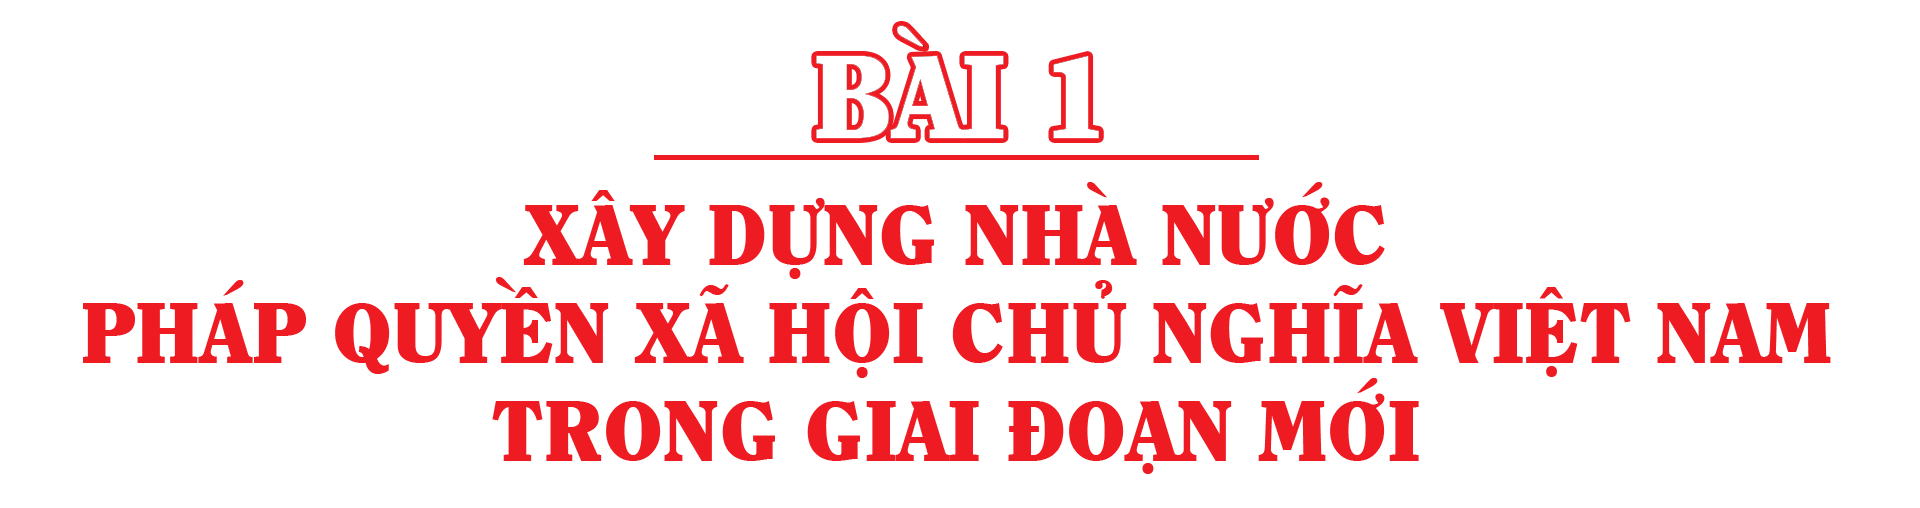 bai1.png